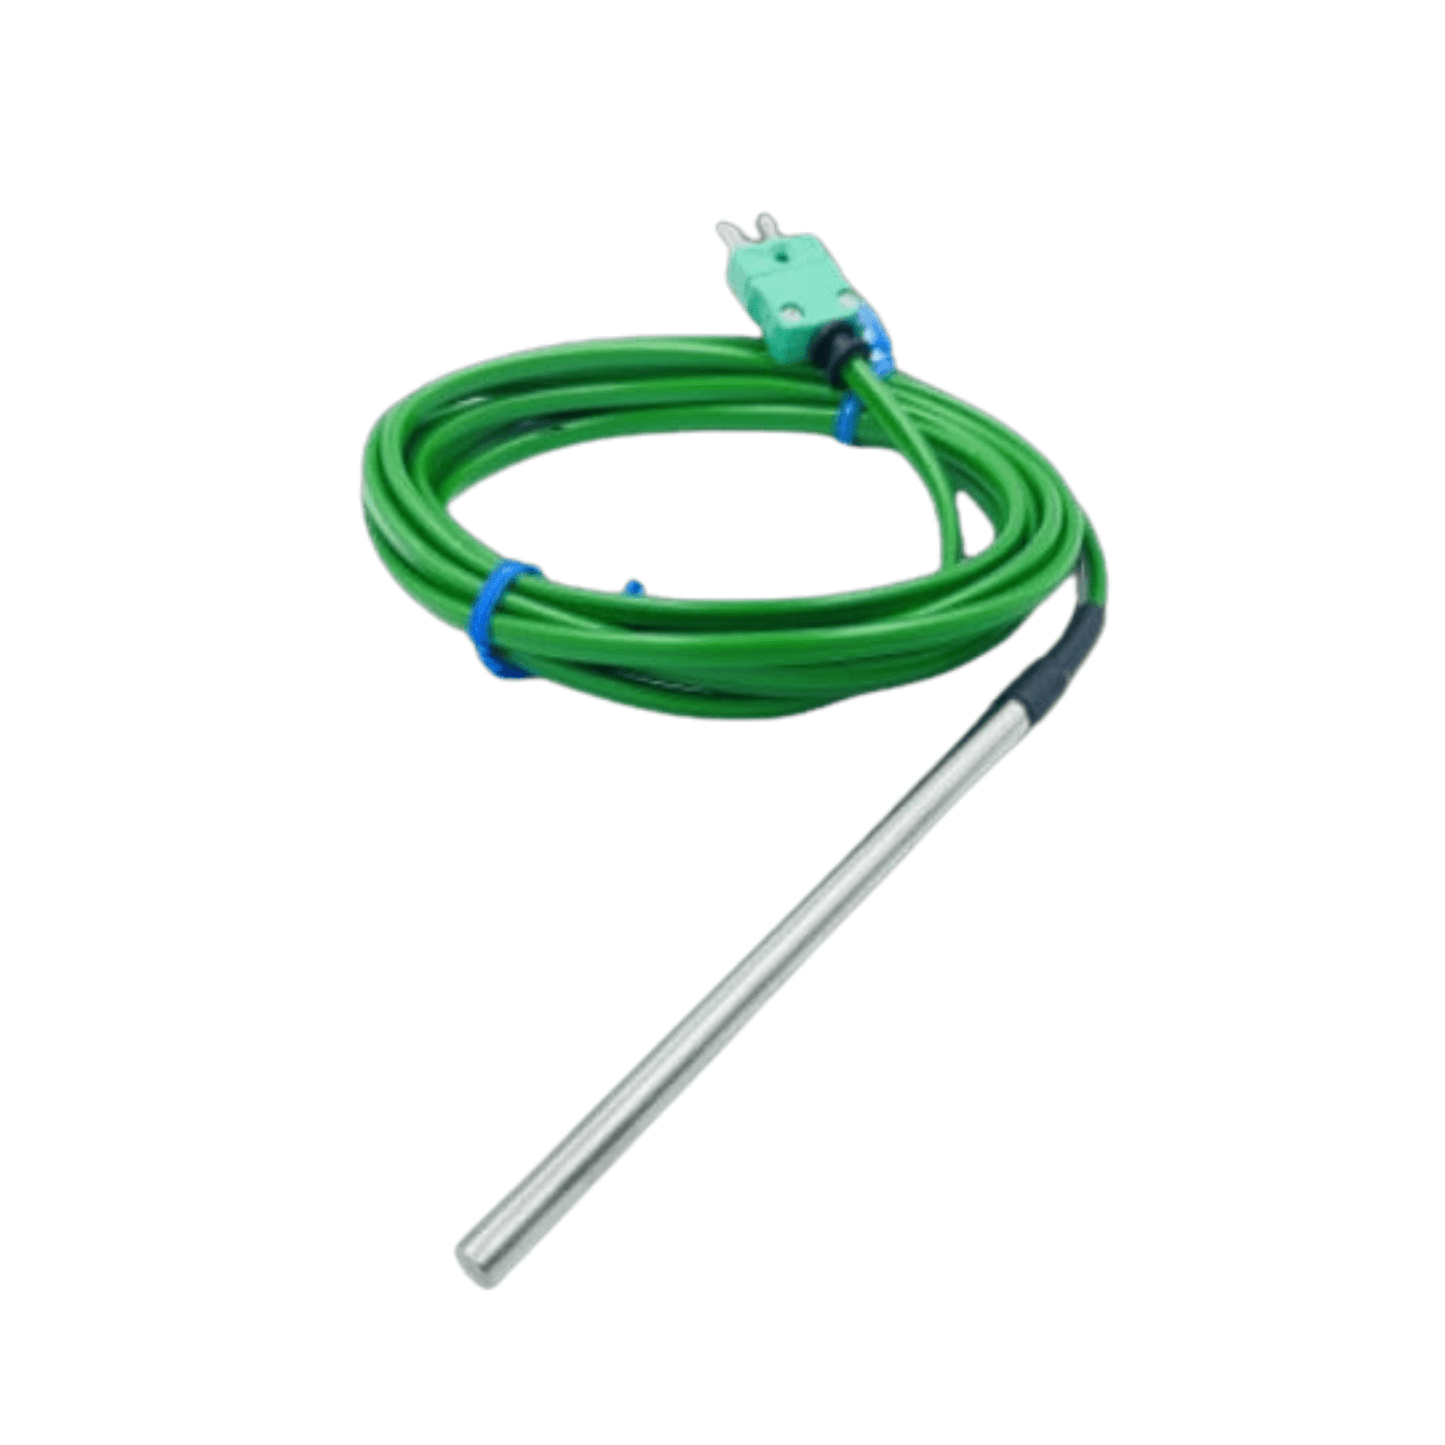 Un câble vert avec une tige métallique conçu pour les applications de température, la Sonde de température à usage général Thermomètre.fr diamètre 6 mm.